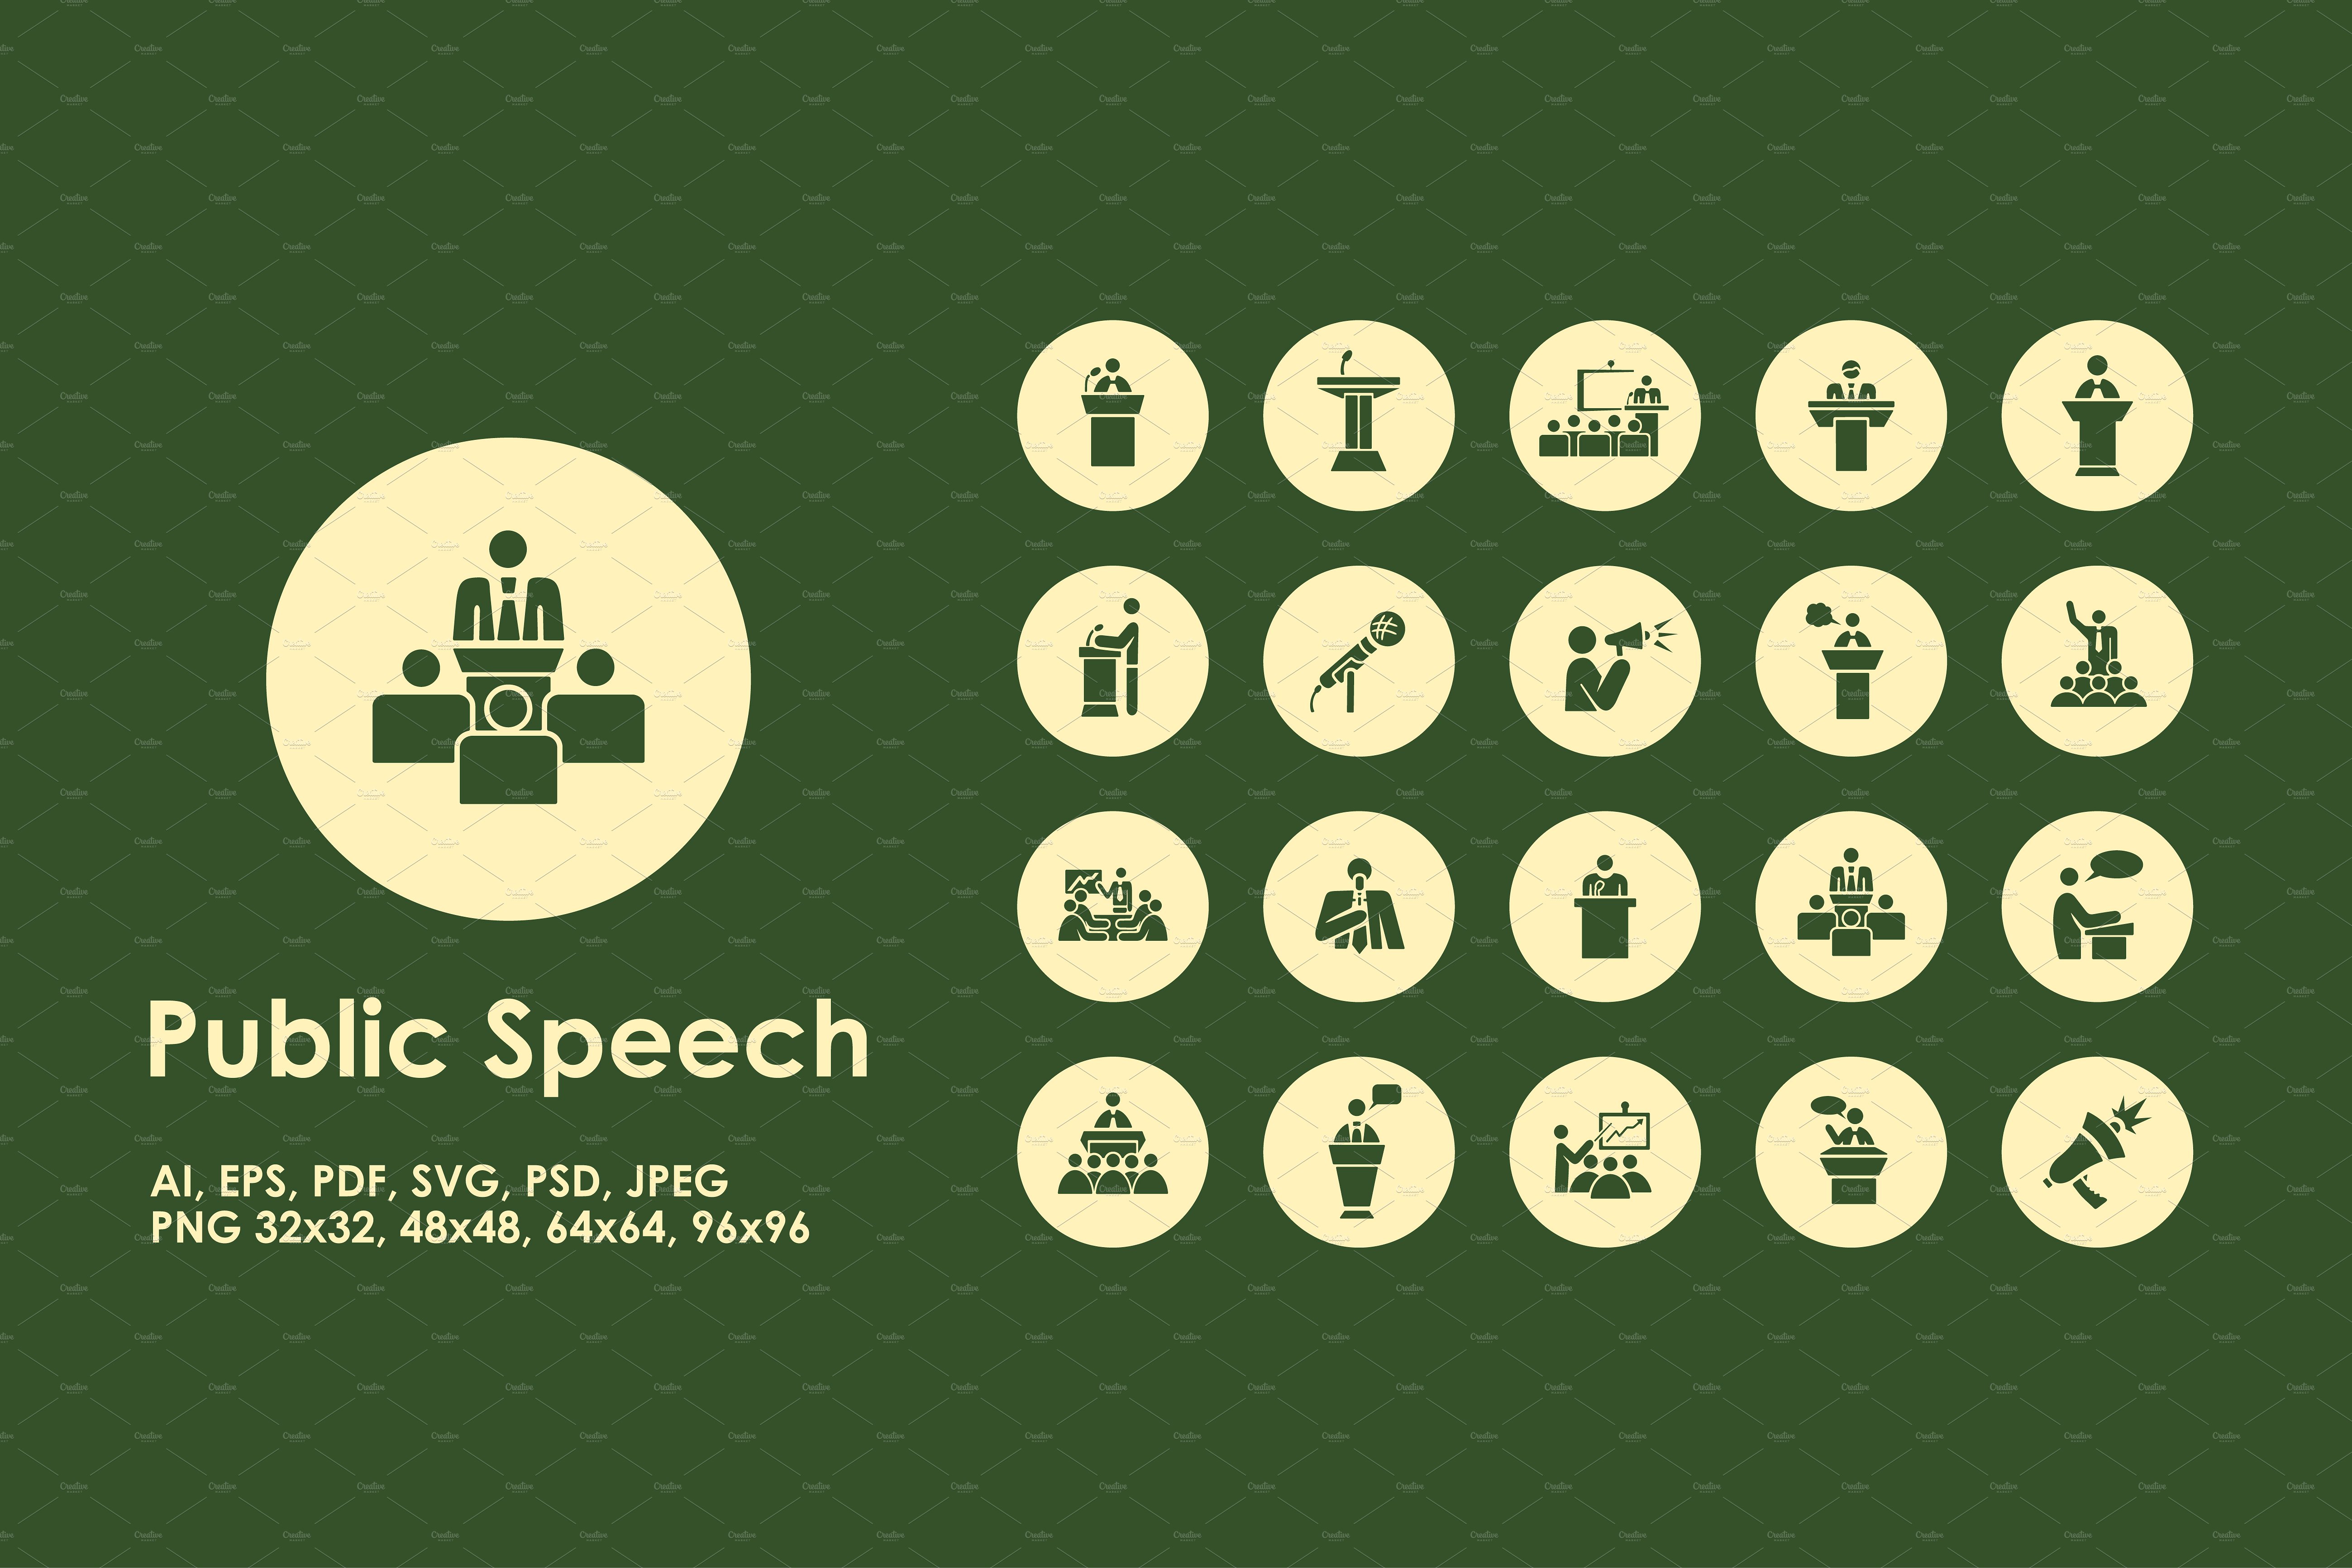 一组公共演讲简单图标  Public Speech simple icons插图